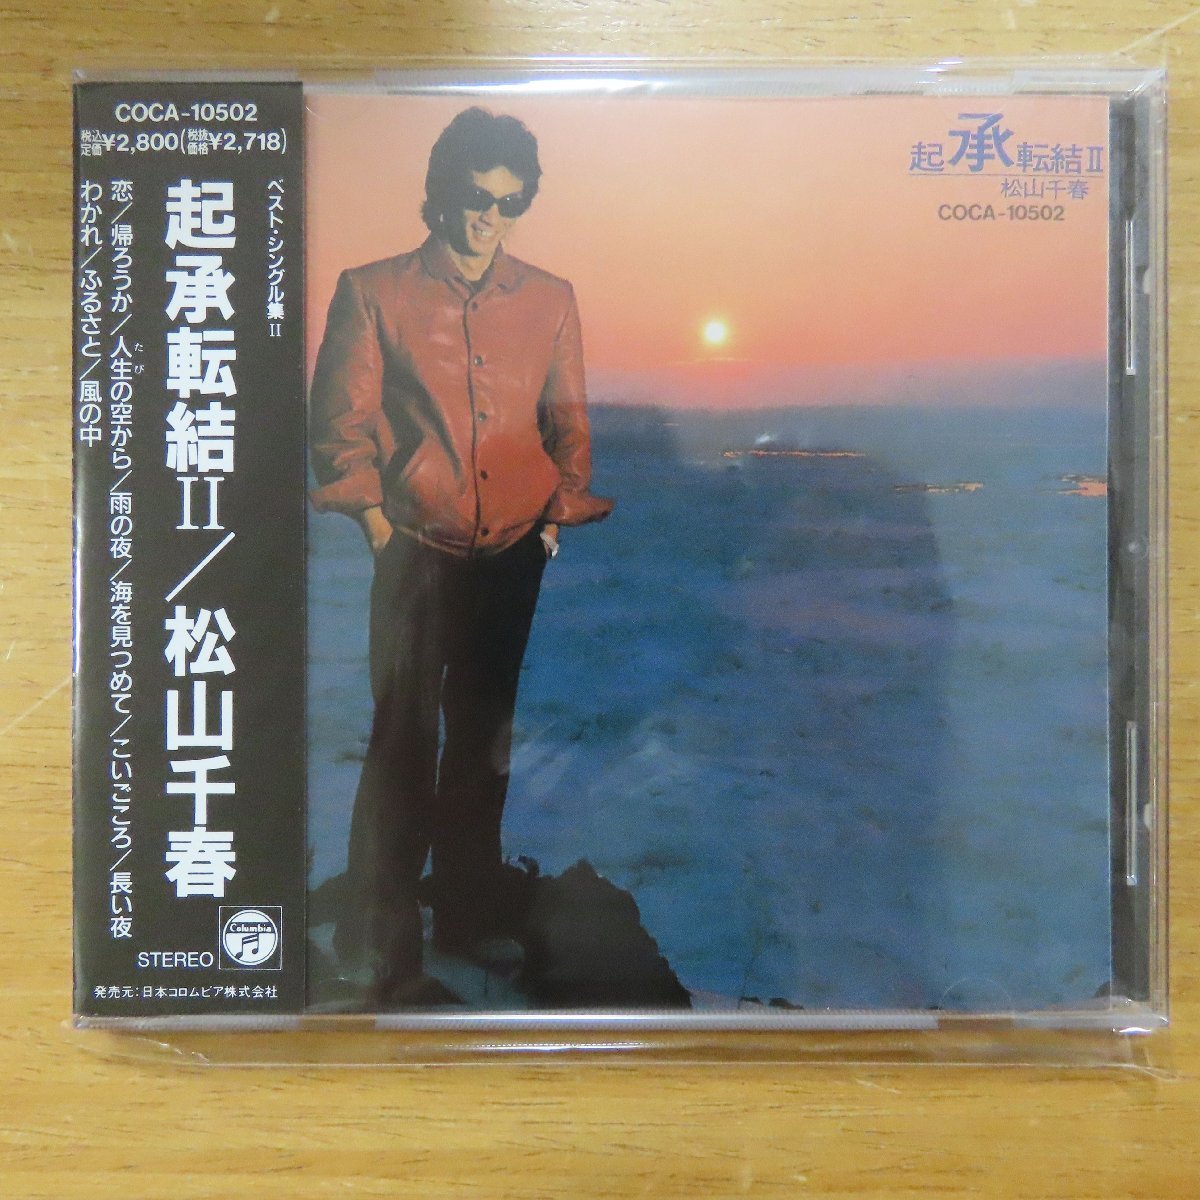 邦楽シングル(EP) 長い夜 / 松山千春 yIrImZHGkl, レコード - corservicali.com